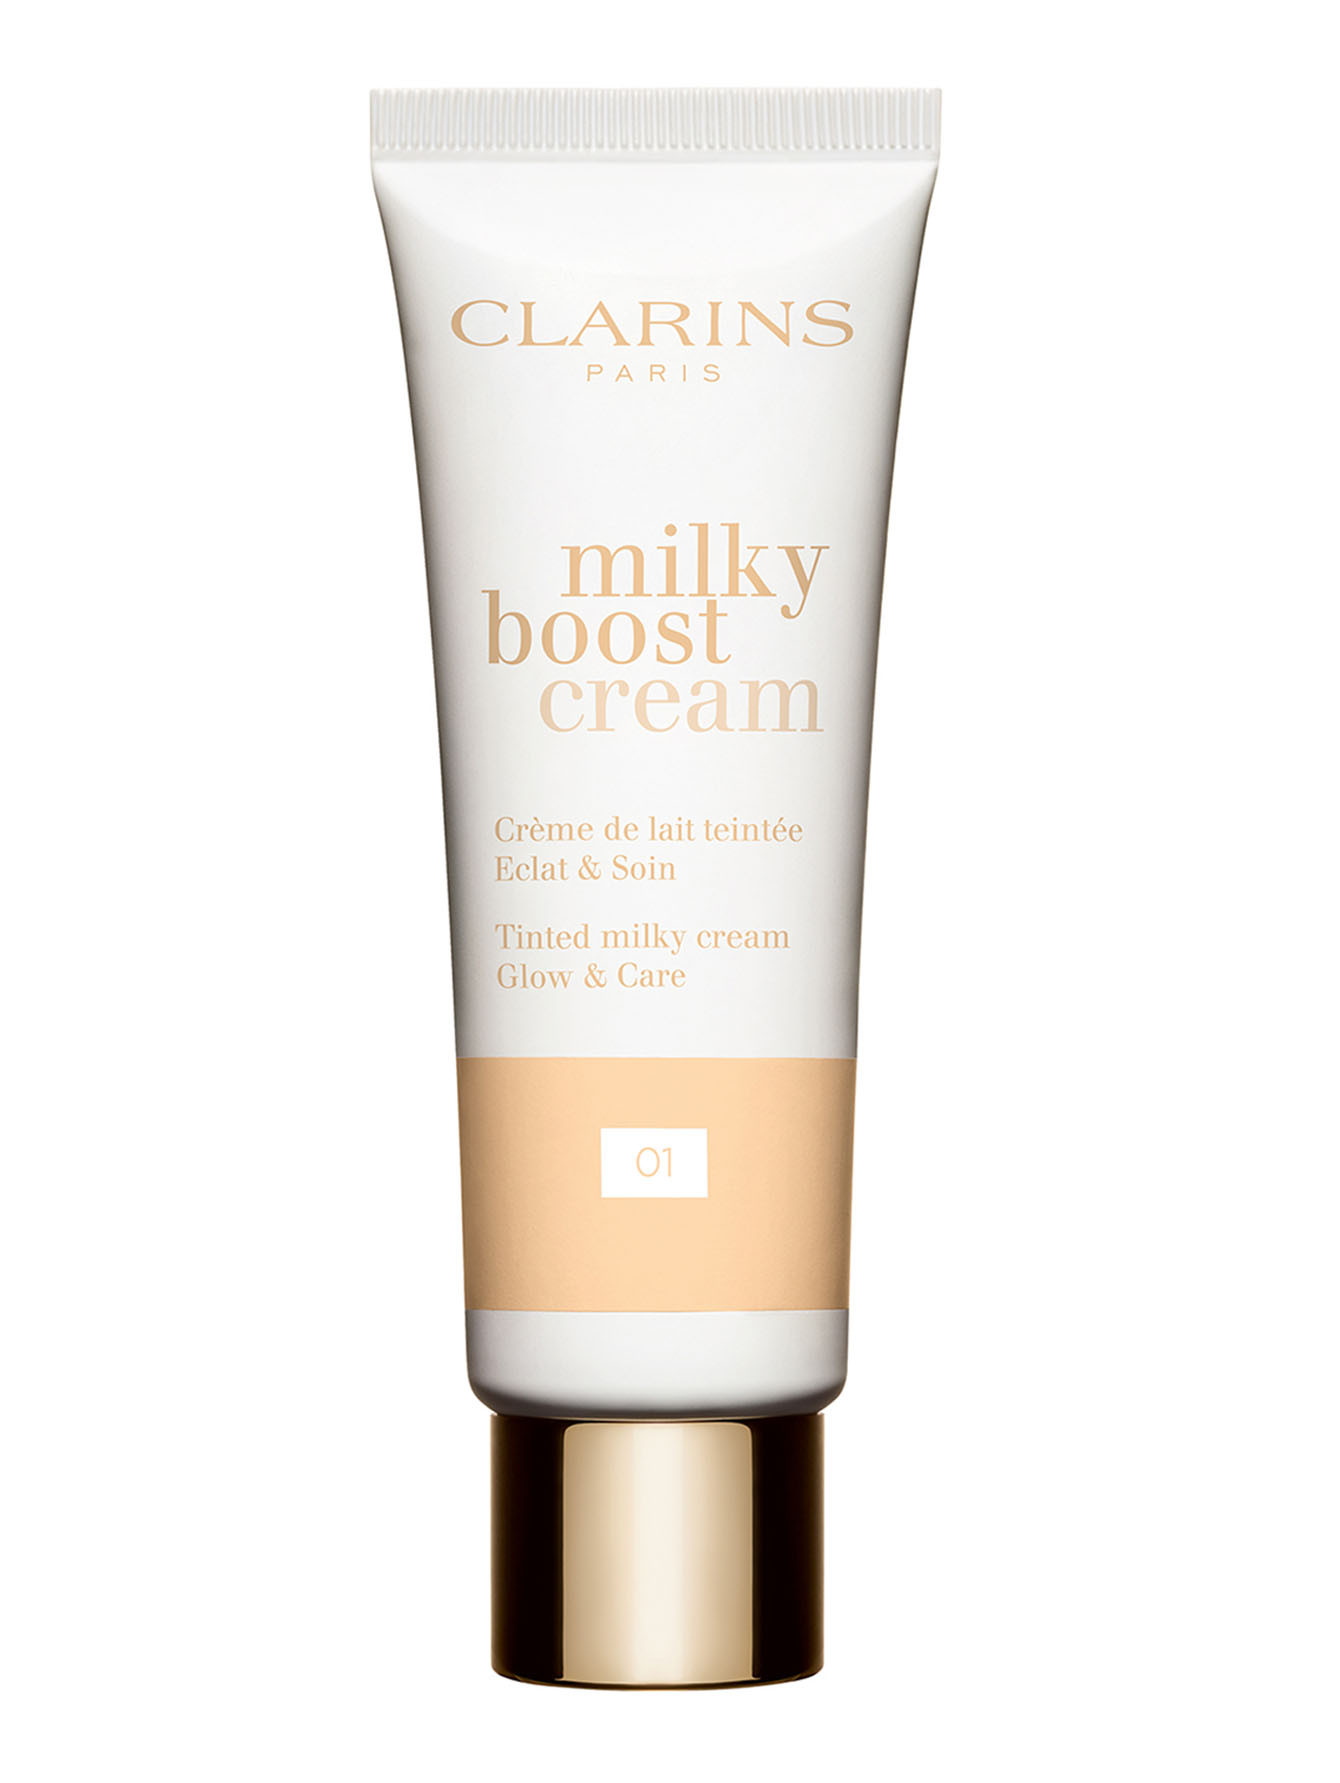 Тональный крем с эффектом сияния Milky Boost Cream, 01, 45 мл - Общий вид